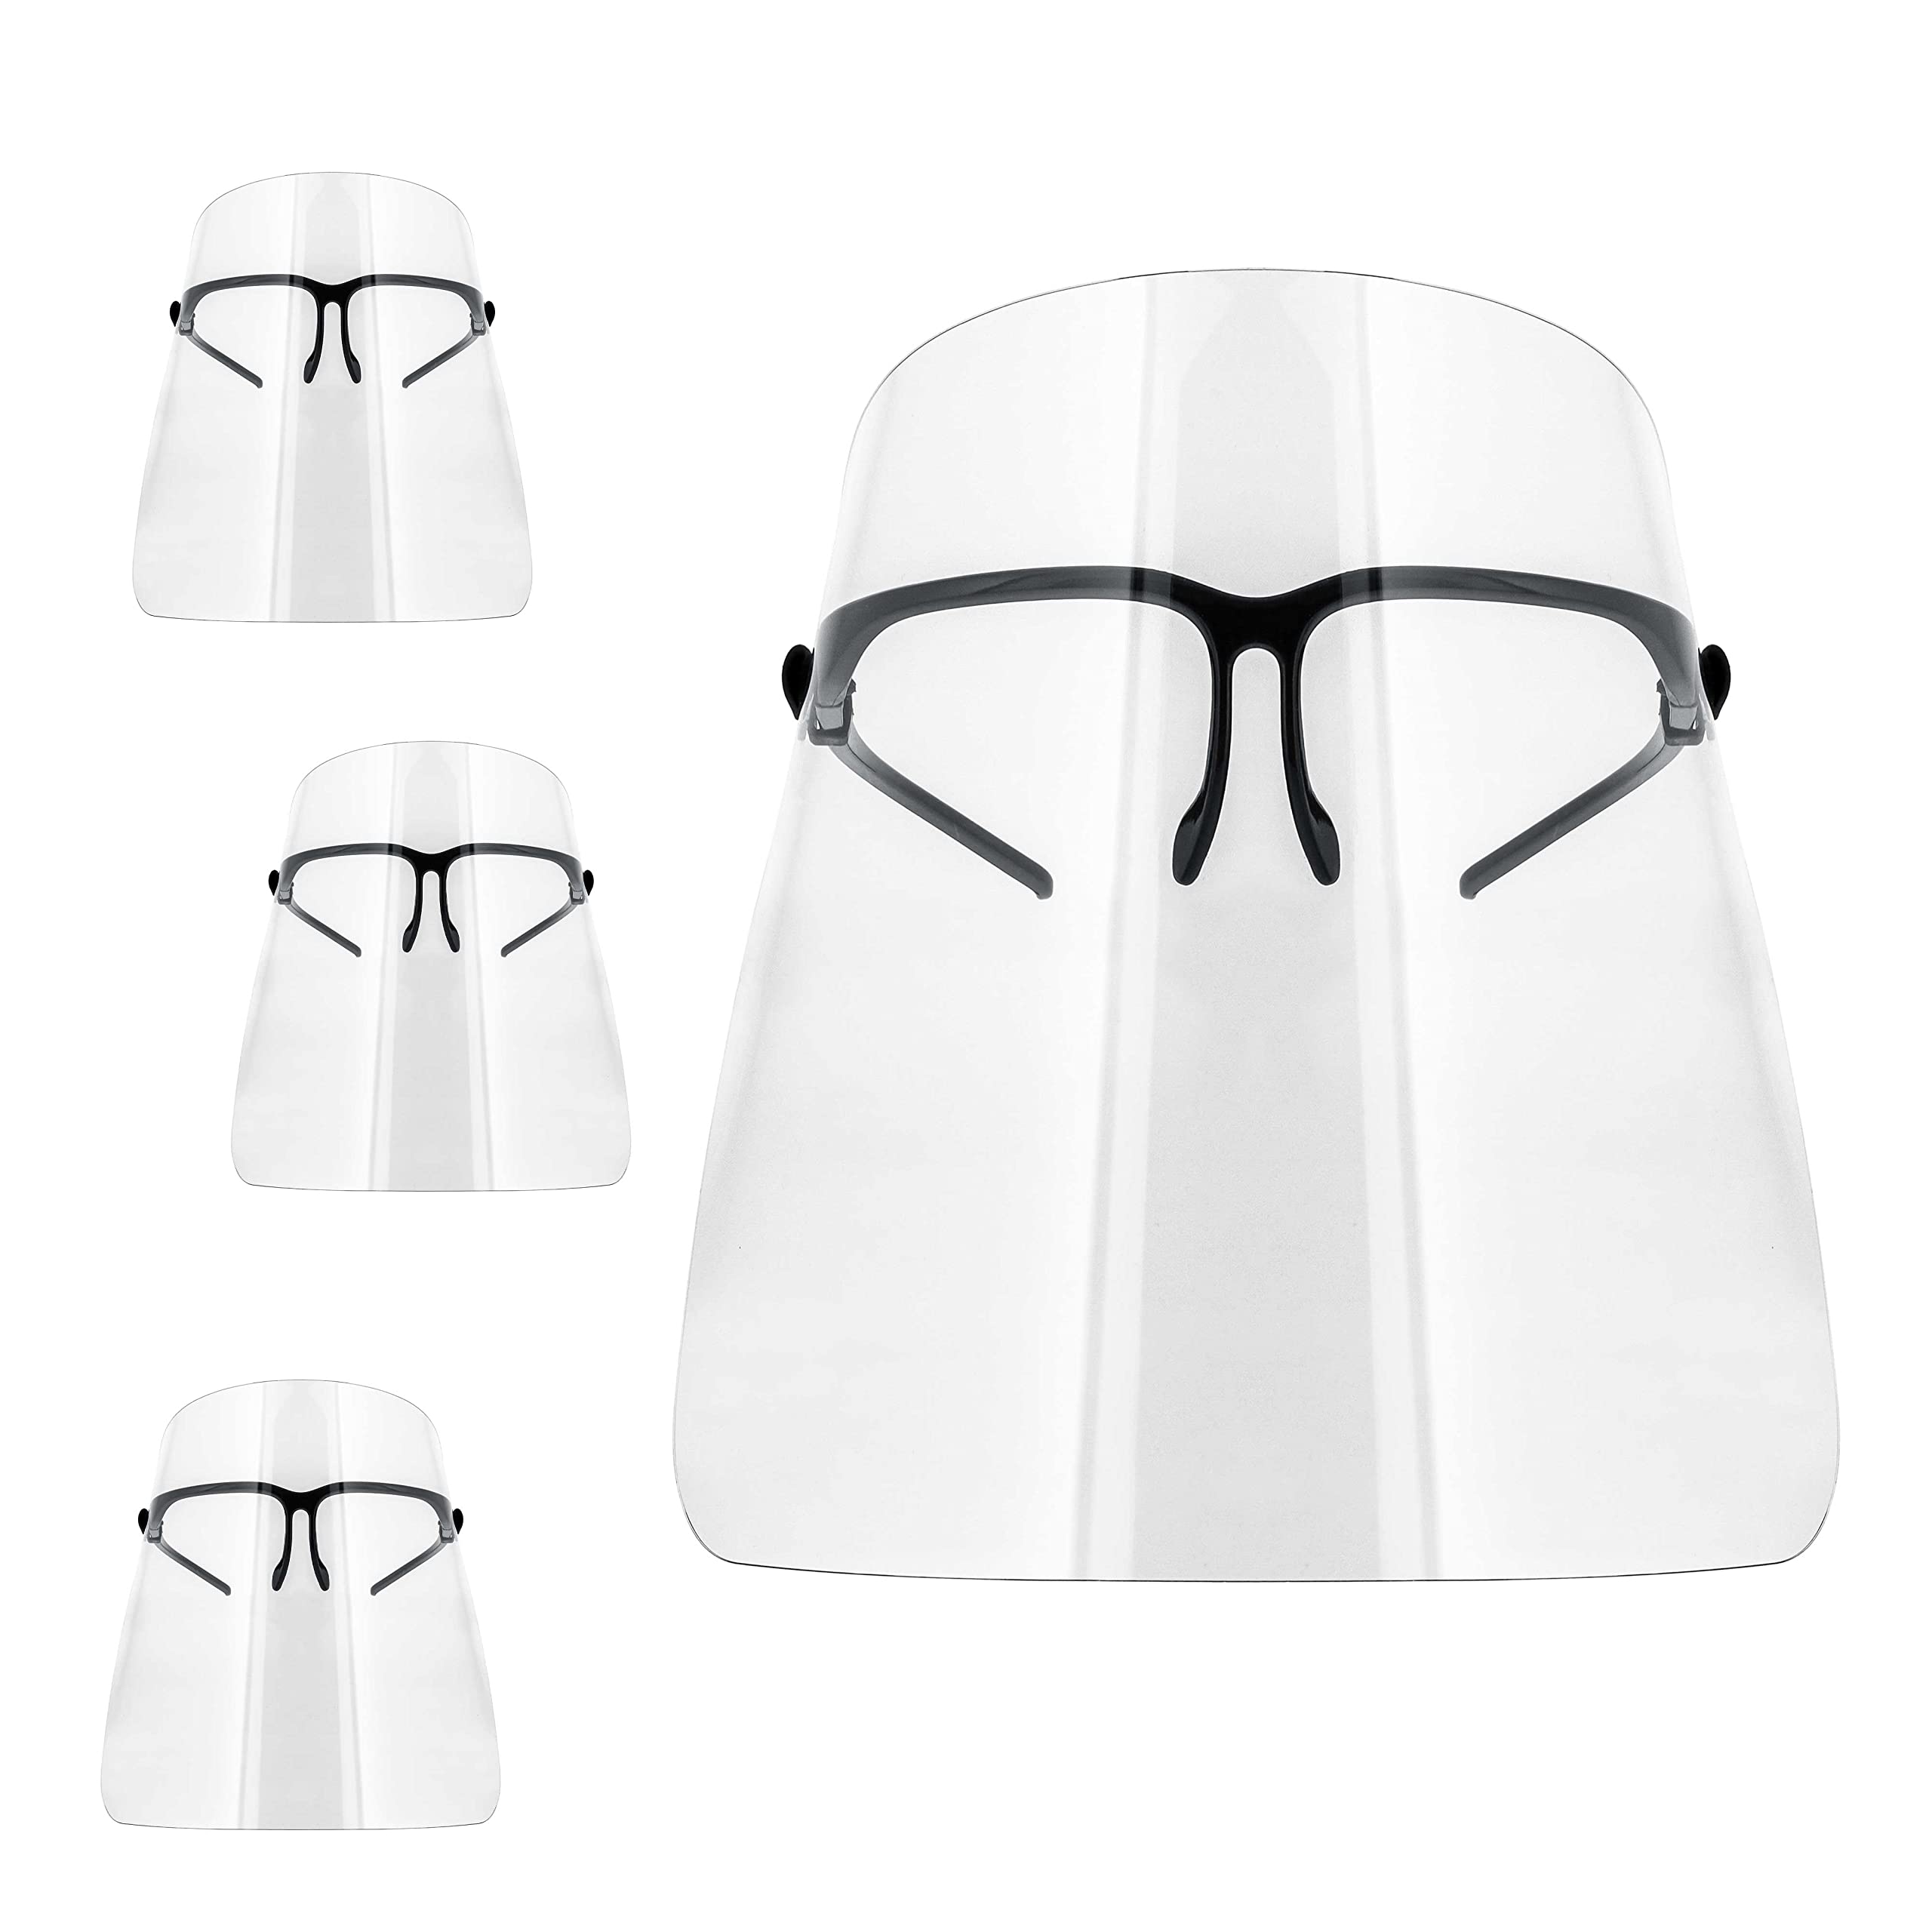 TCP Global Salon World Safety Face Shields con marcos de anteojos (paquete de 10) - Protectores faciales completos ultra transparentes